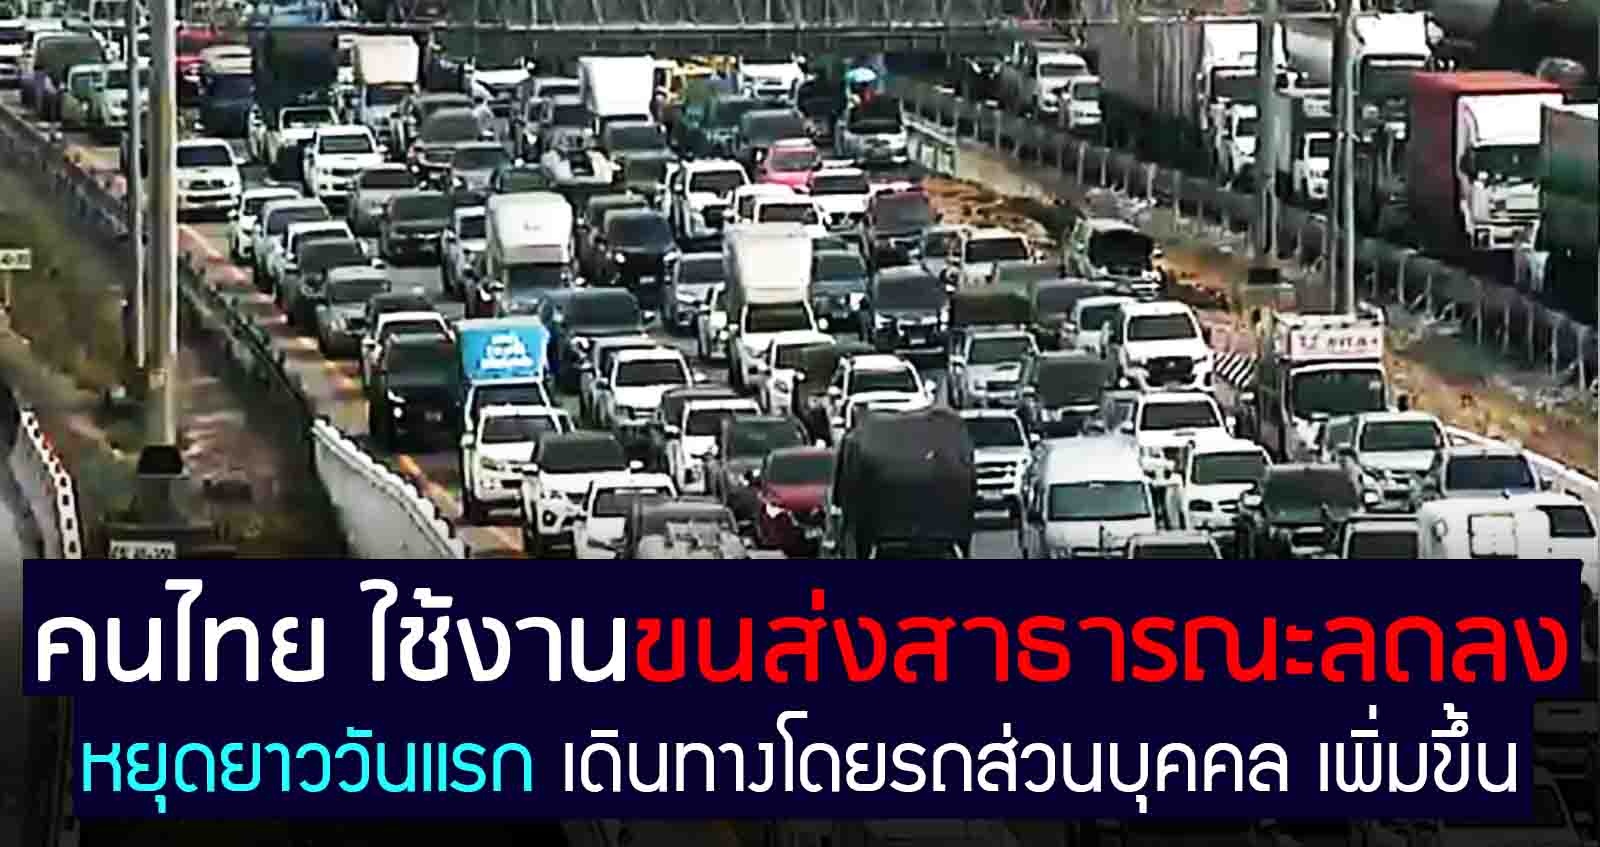 หยุดยาววันแรก คนไทยใช้รถยนต์ส่วนบุคคล เพิ่มขึ้น ขนส่งสาธารณะลดลง